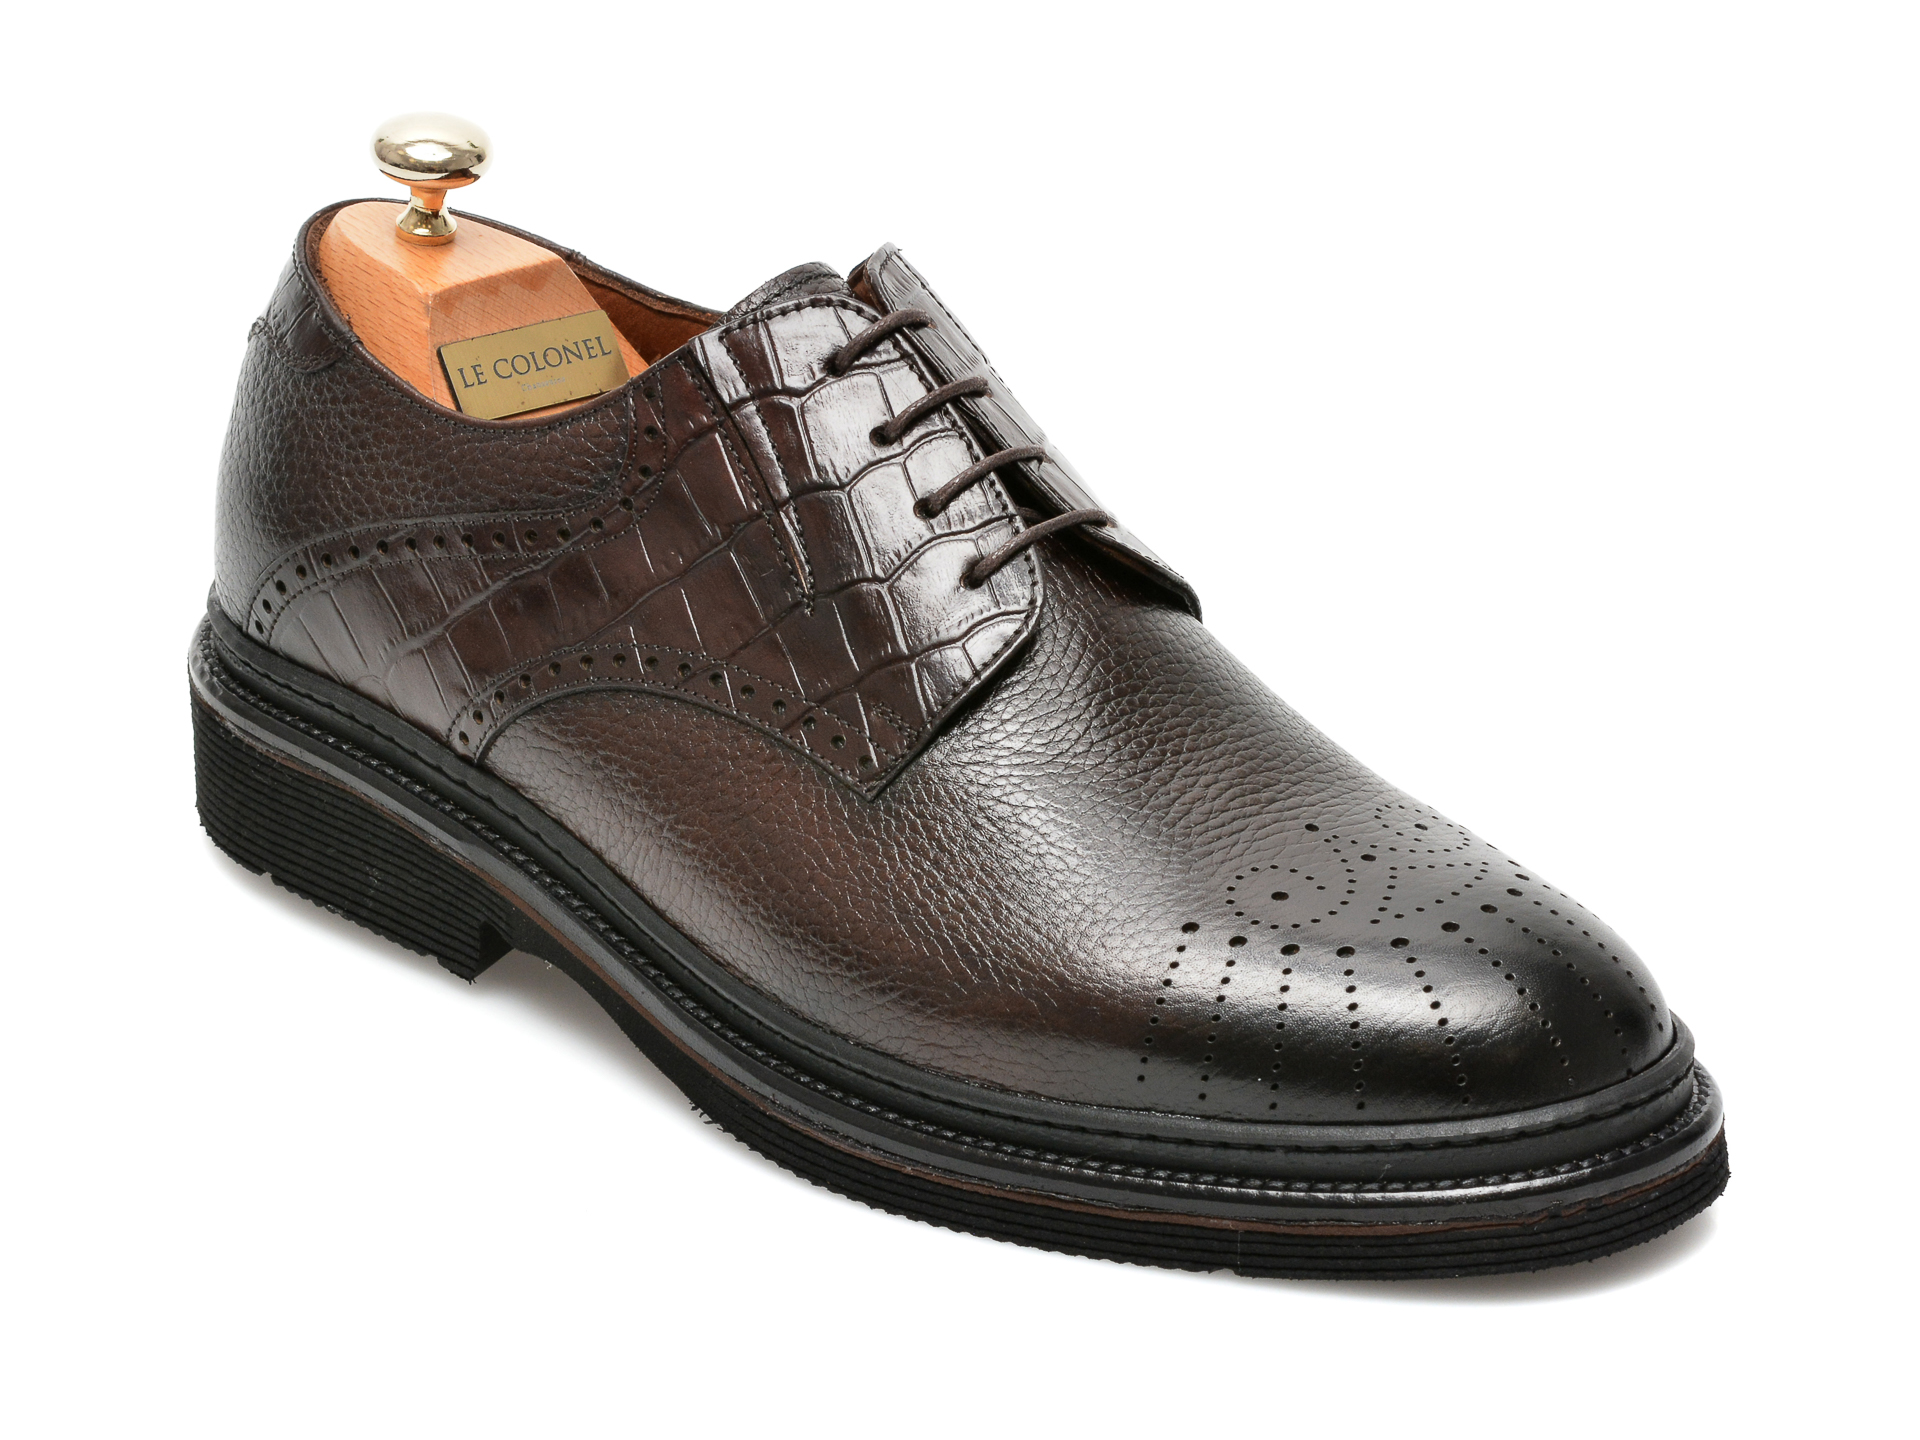 Pantofi LE COLONEL maro, 61722, din piele naturala imagine reduceri black friday 2021 Le Colonel